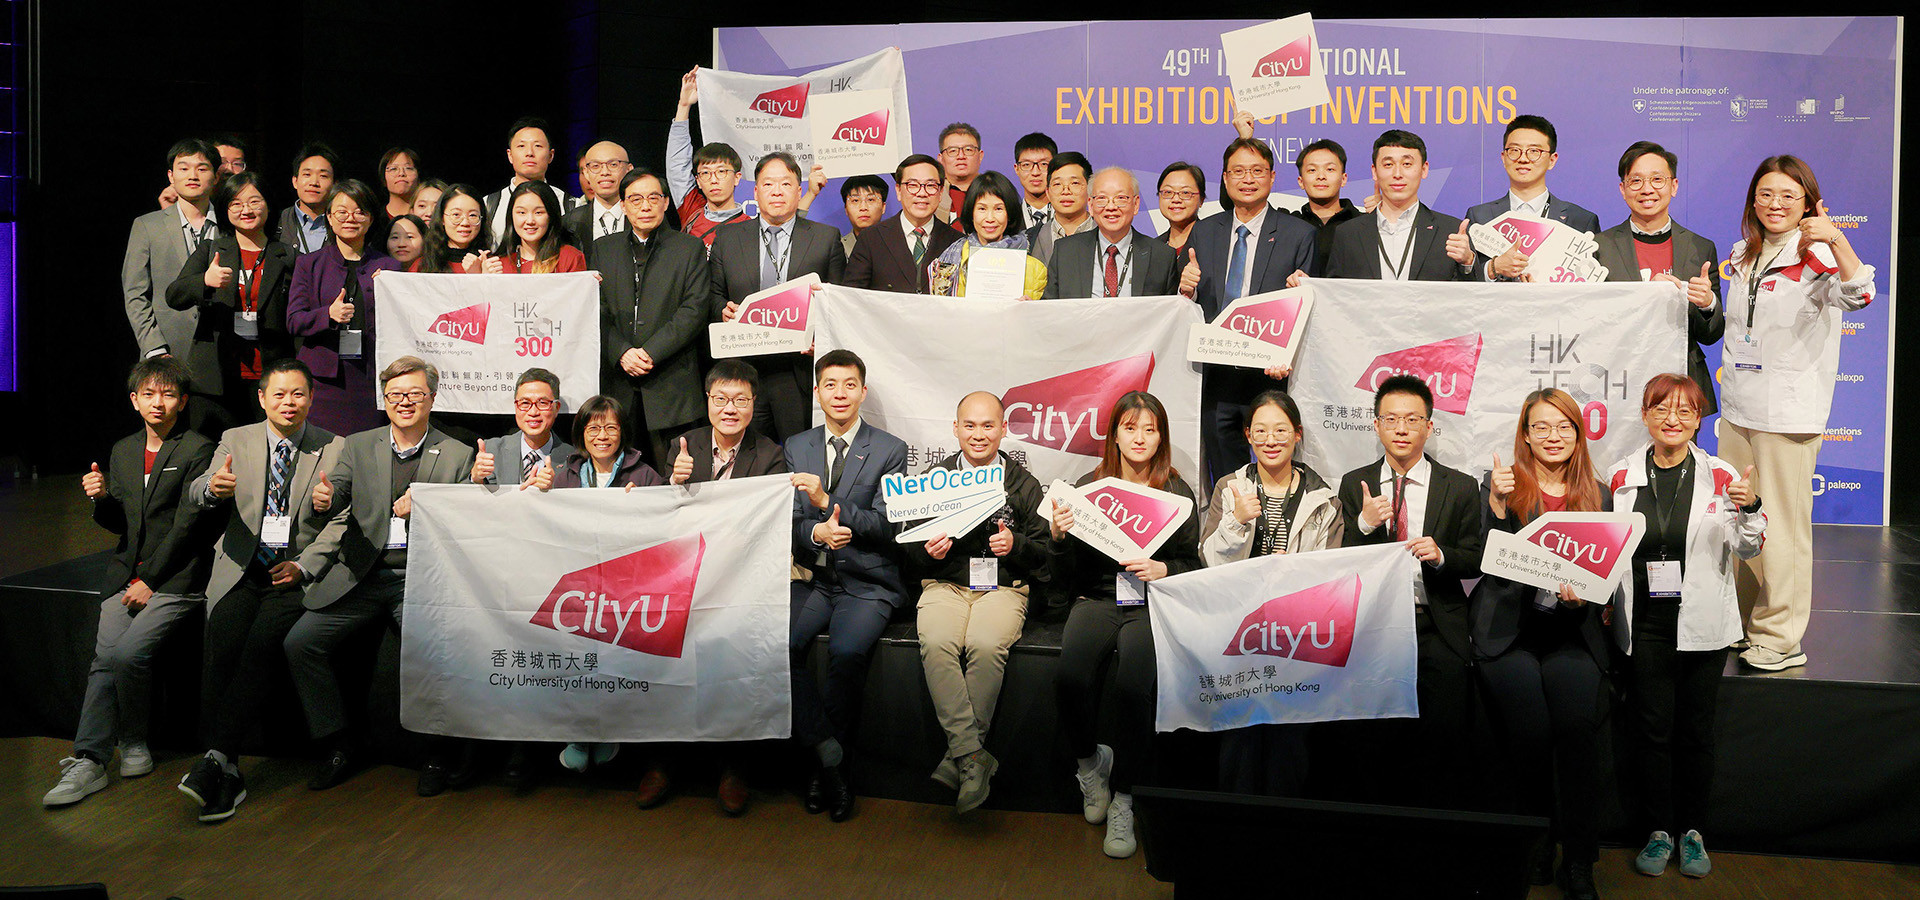 CityUHK triumphs at IEIG with 36 awards